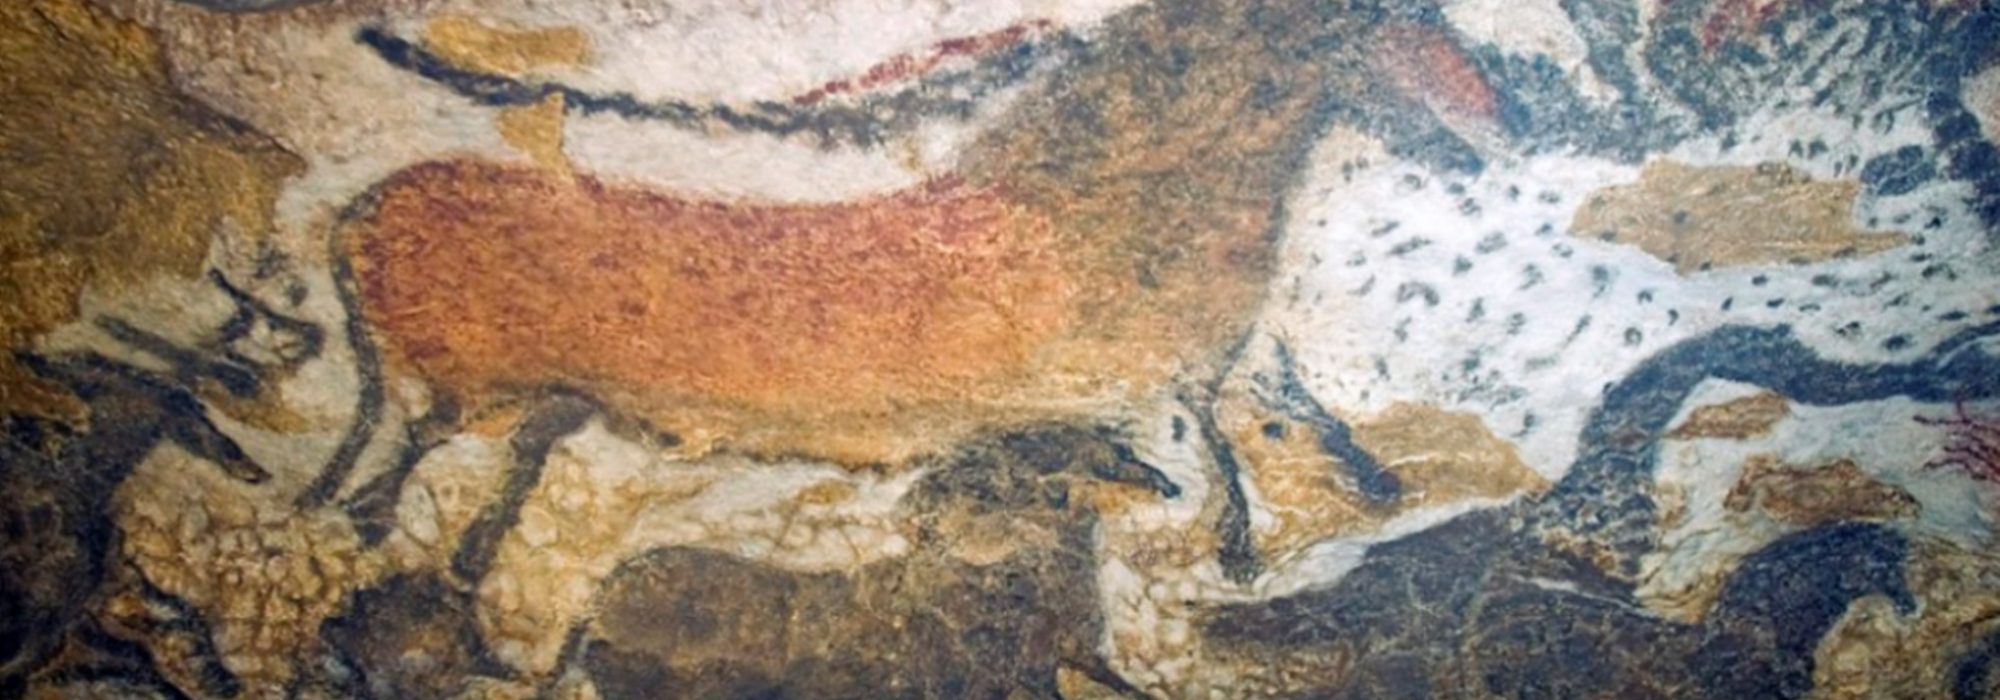 Imagem: pintura rupestre de Lascaux II